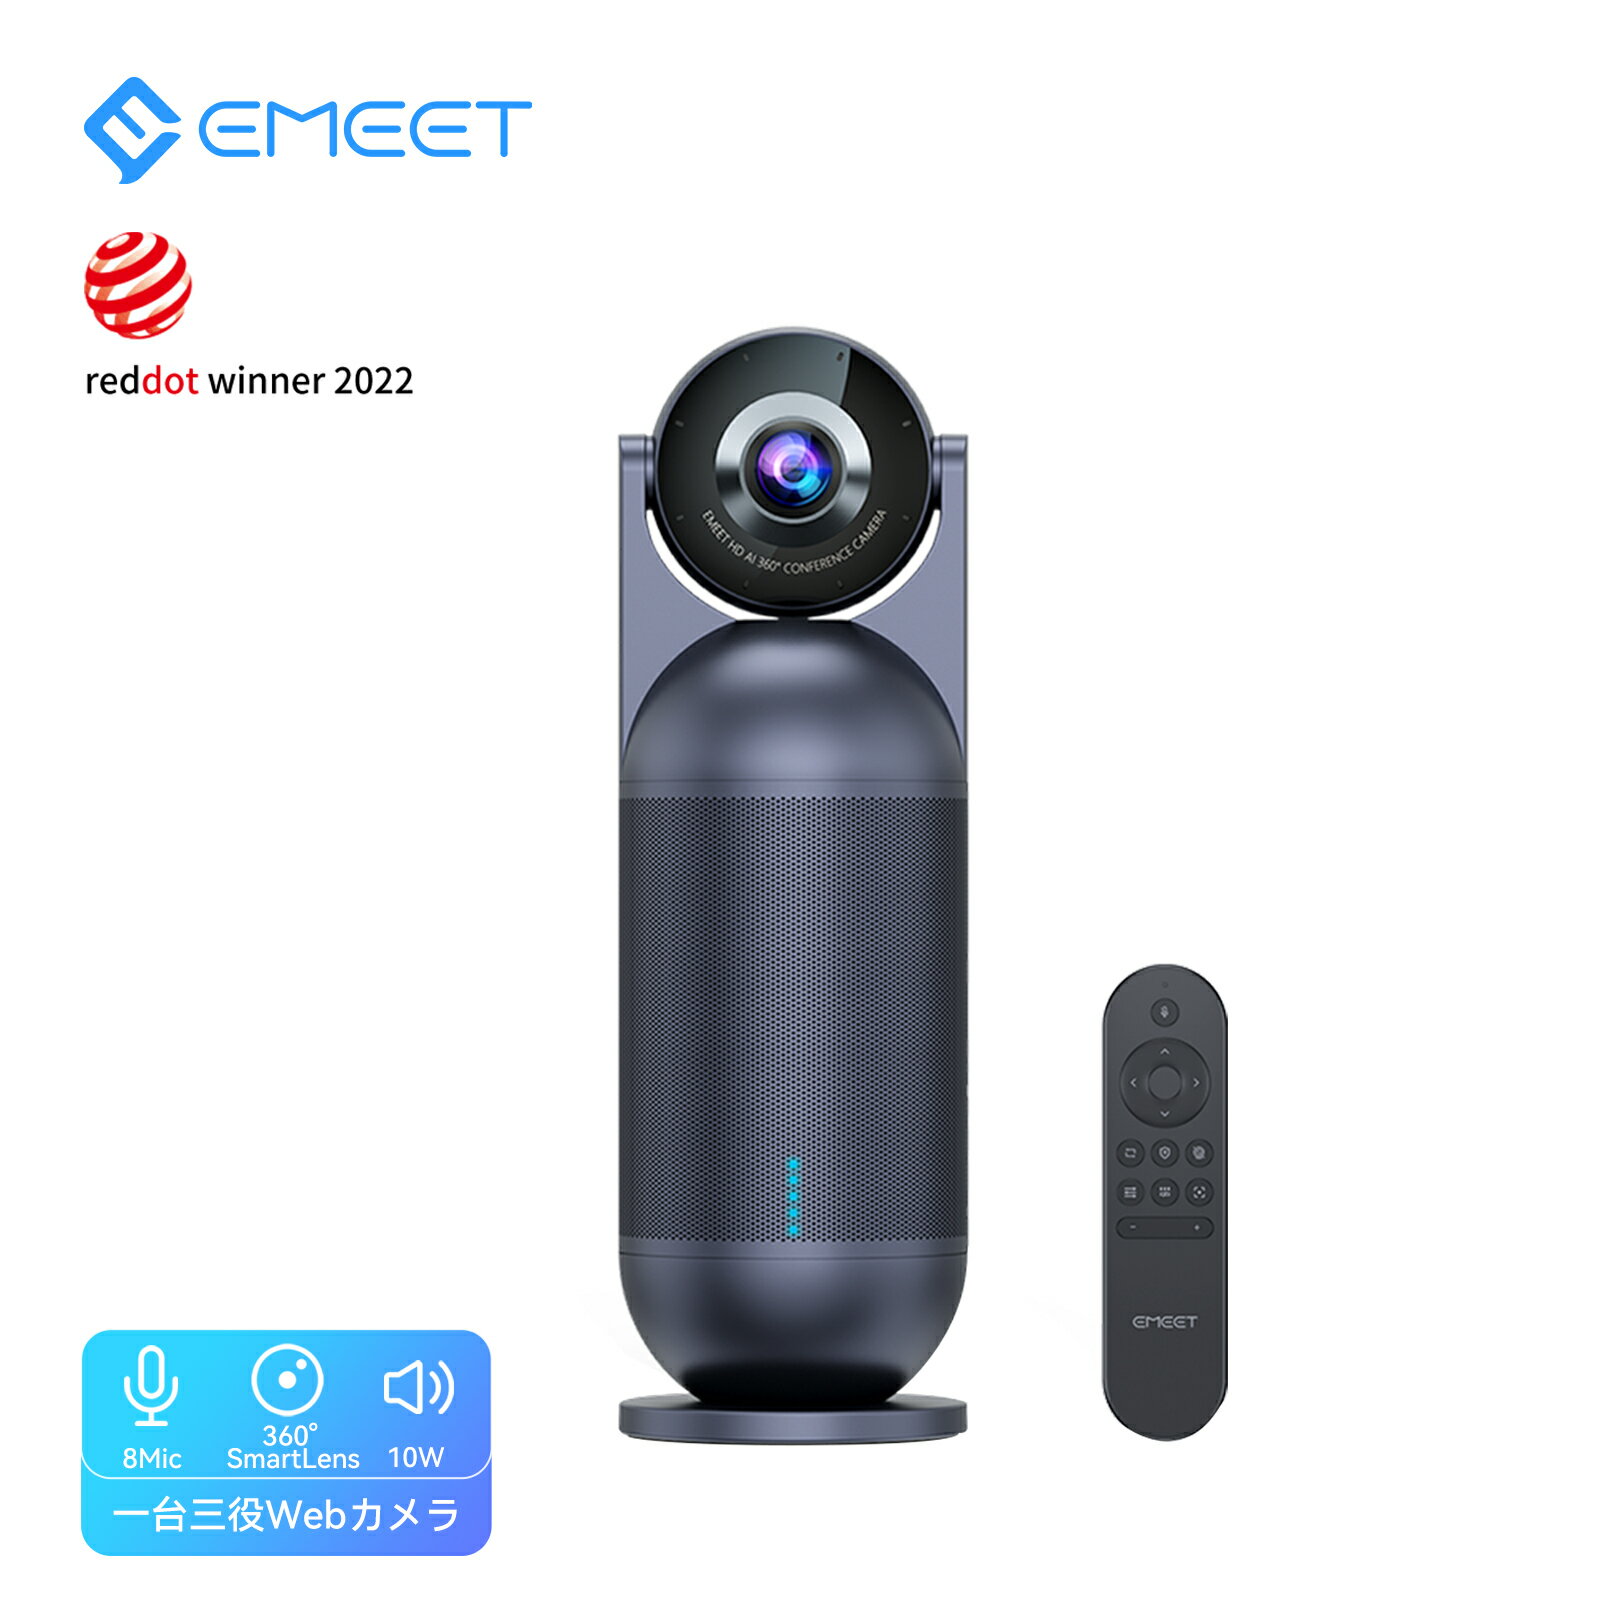 EMEET ウェブカメラ 会議用 360度AI自動フォーカスカメラ HD1080P 8つの全指向性マイク 10Wスピーカー搭載 大音量 1…